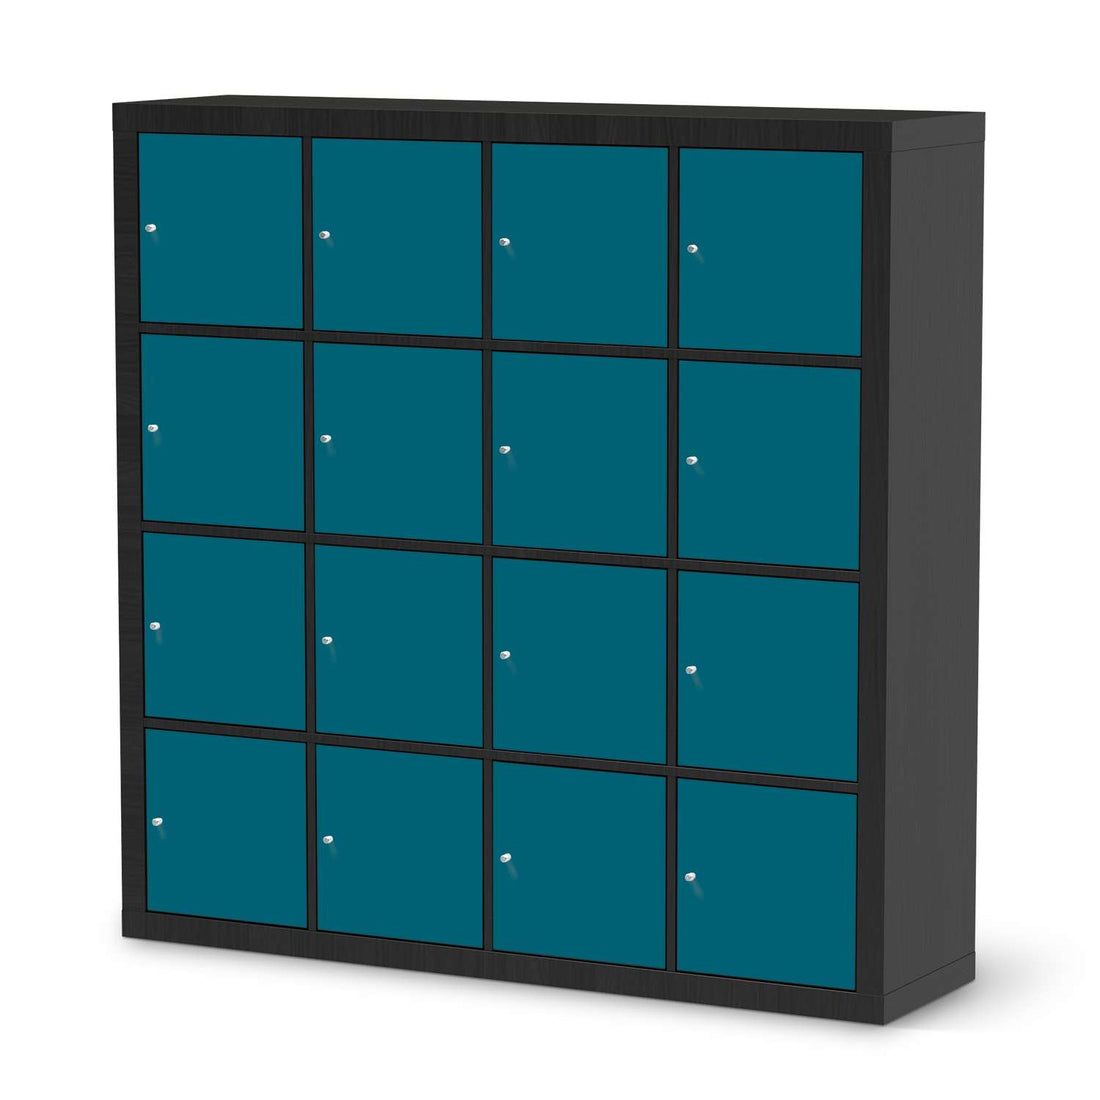 Selbstklebende Folie Türkisgrün Dark - IKEA Expedit Regal 16 Türen - schwarz